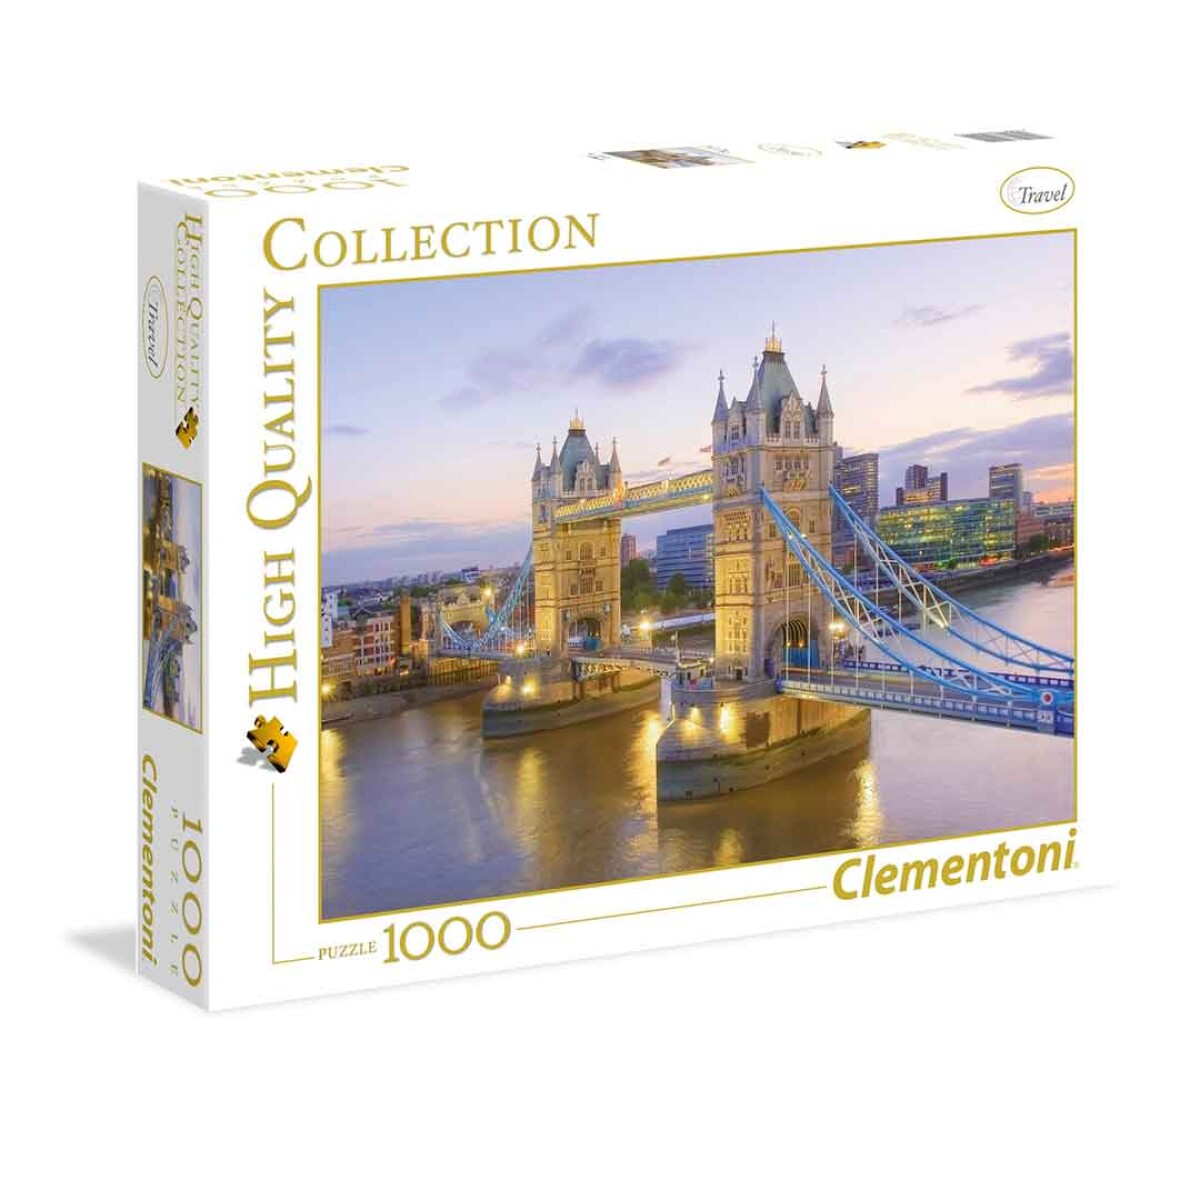 Puzzle Clementoni 1000 piezas London Bridge High Quality - 001 